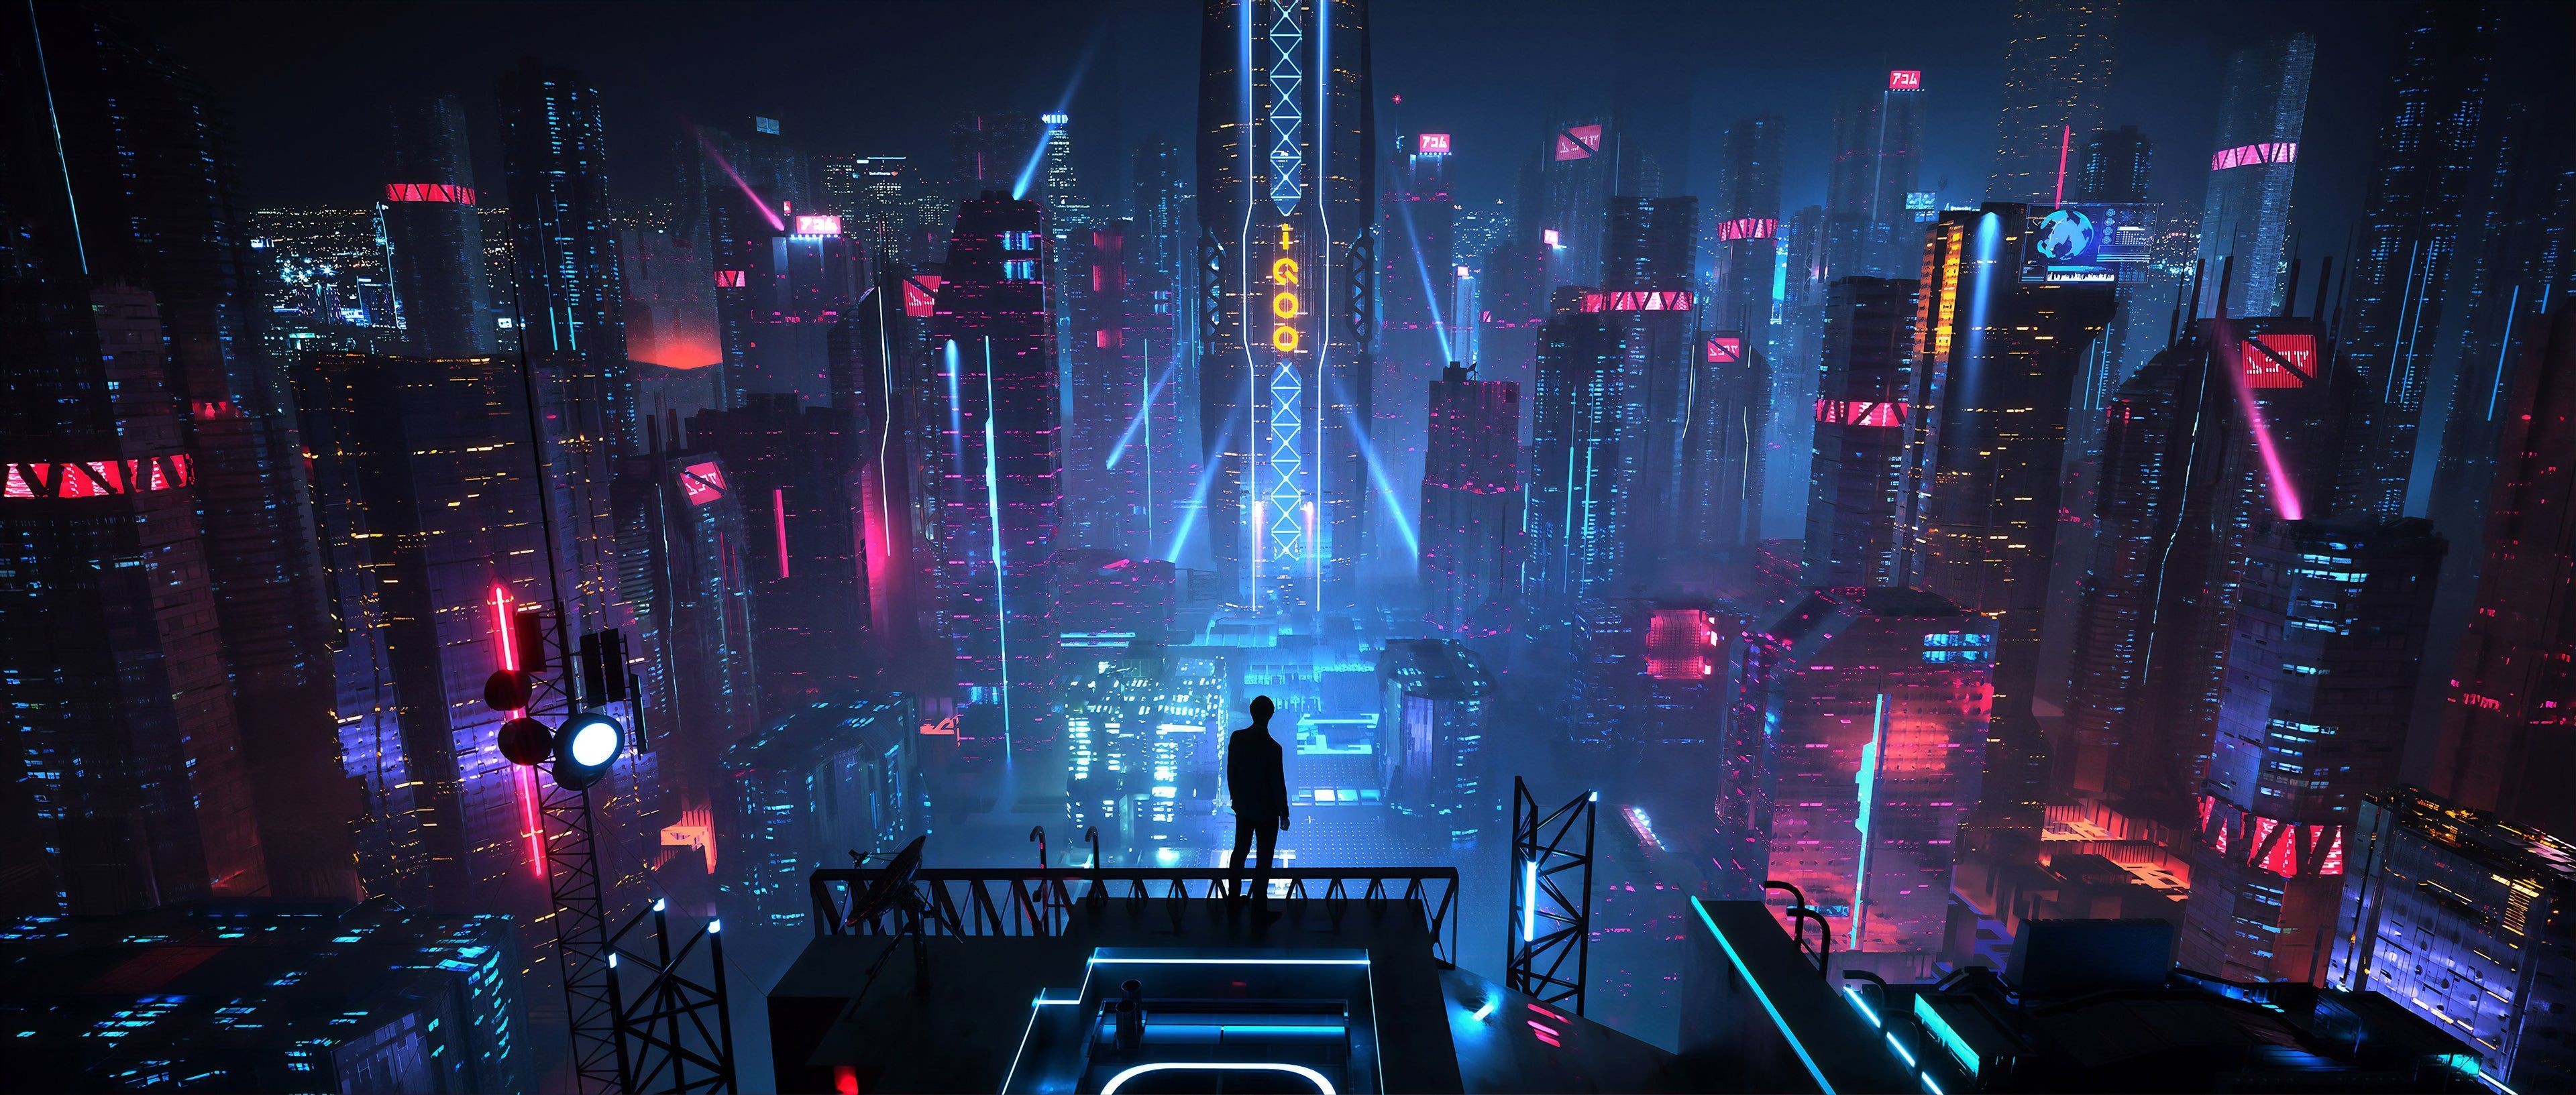 Cyberpunk City 4K wallpaper. Scene design, Cyberpunk city, Futuristic city